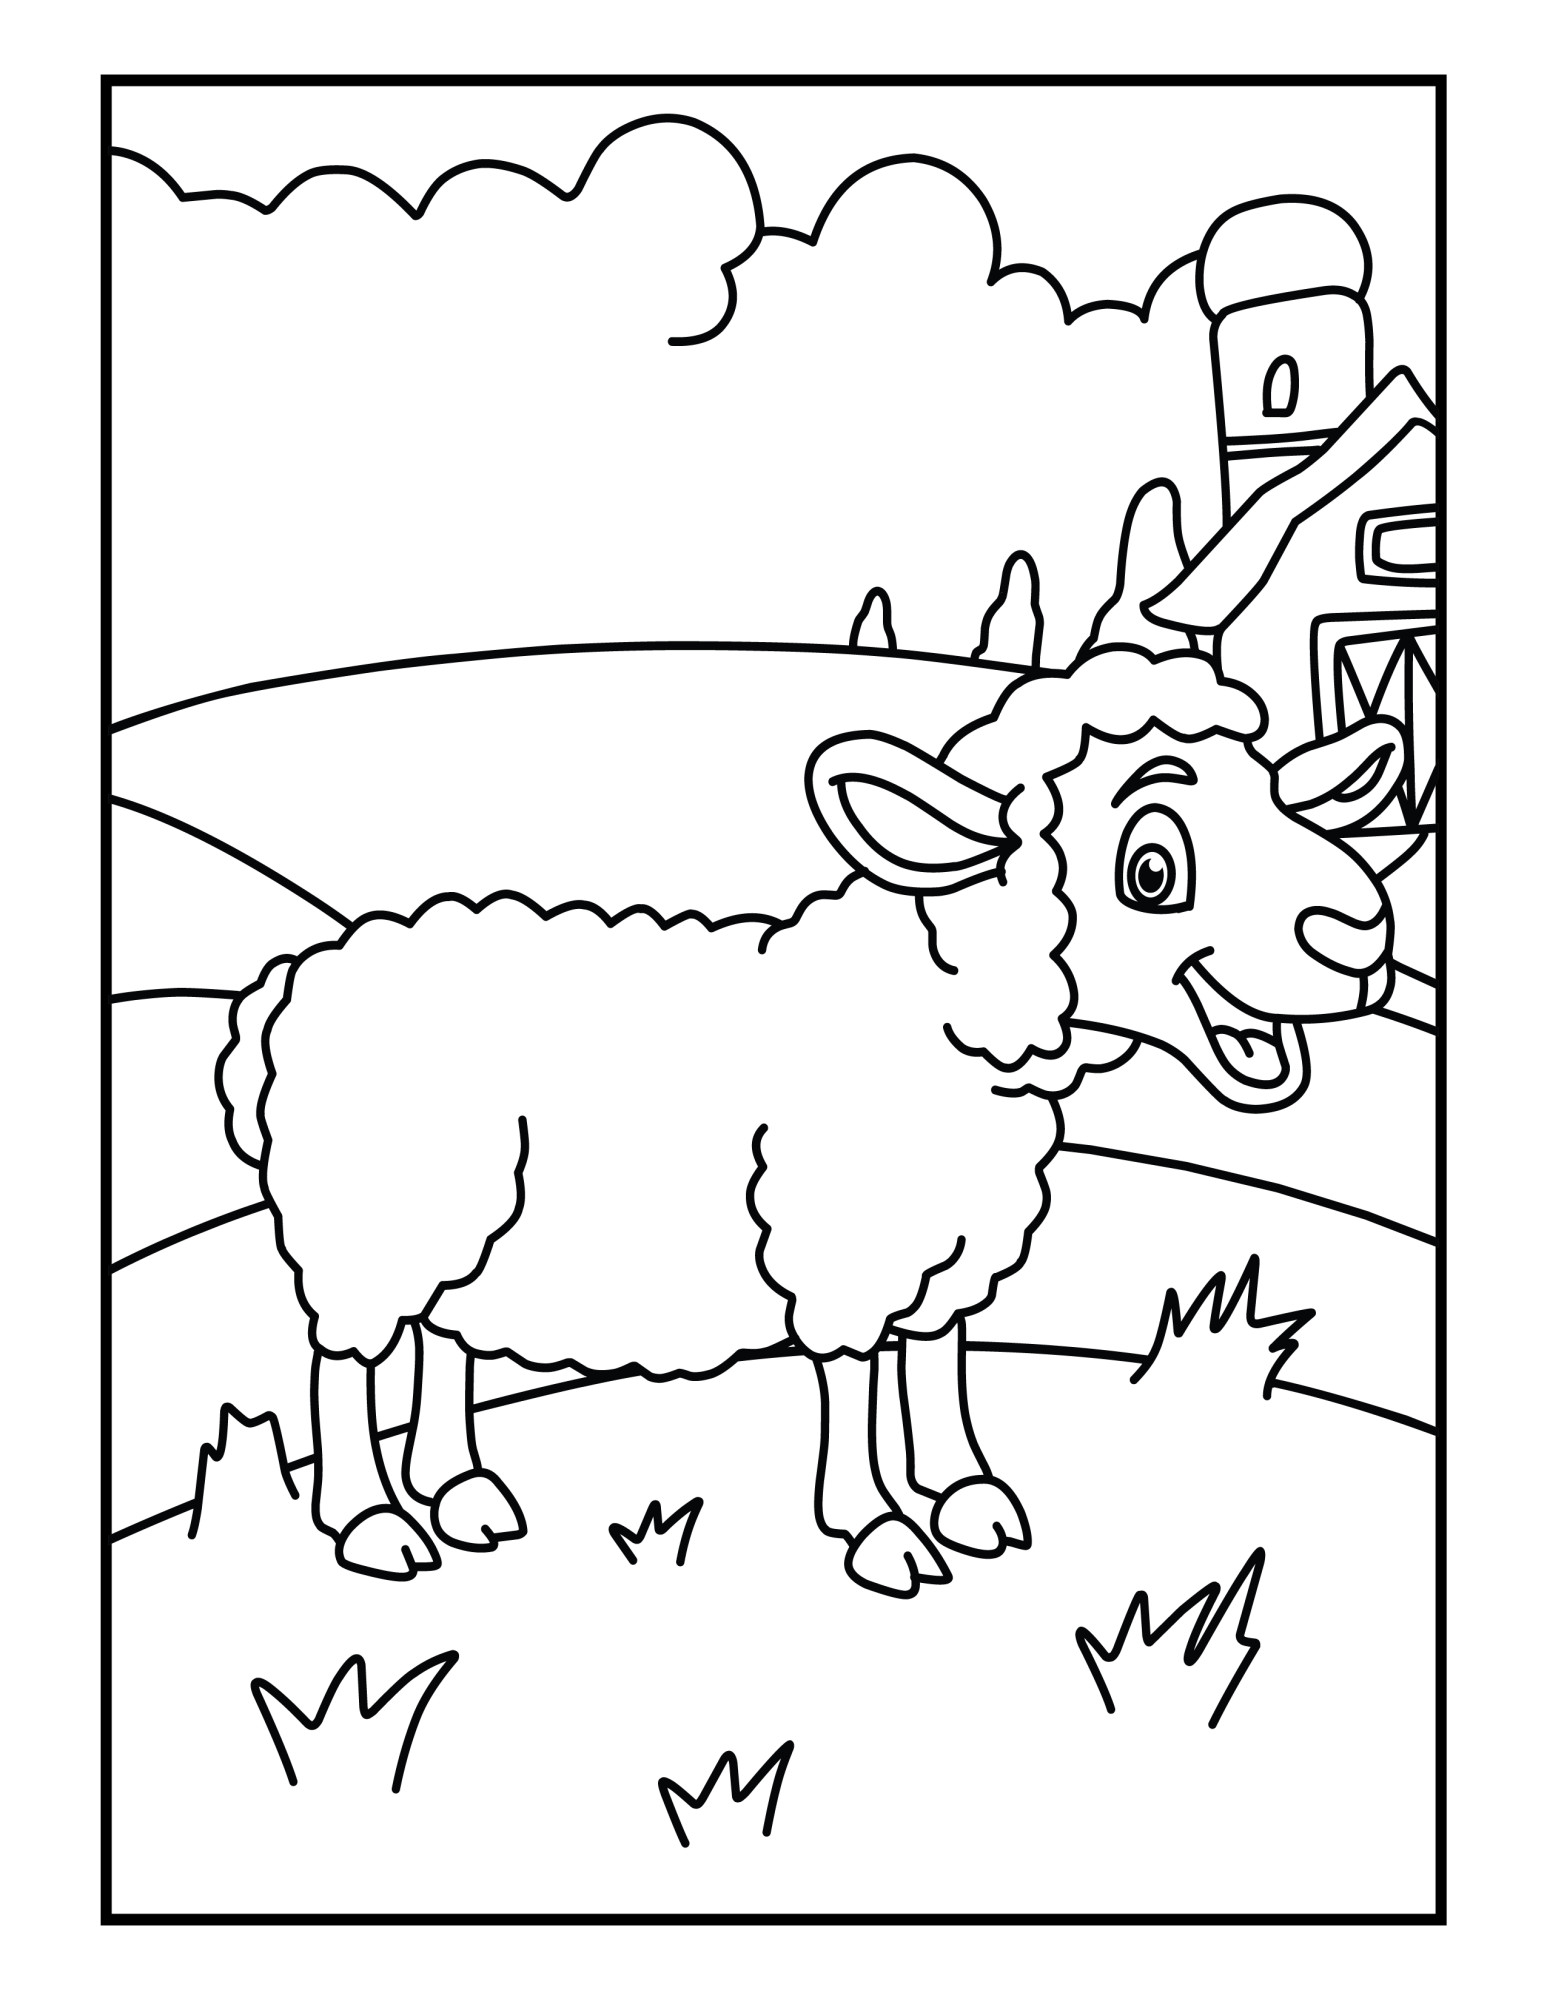 Раскраска для детей: забавная овца на ферме